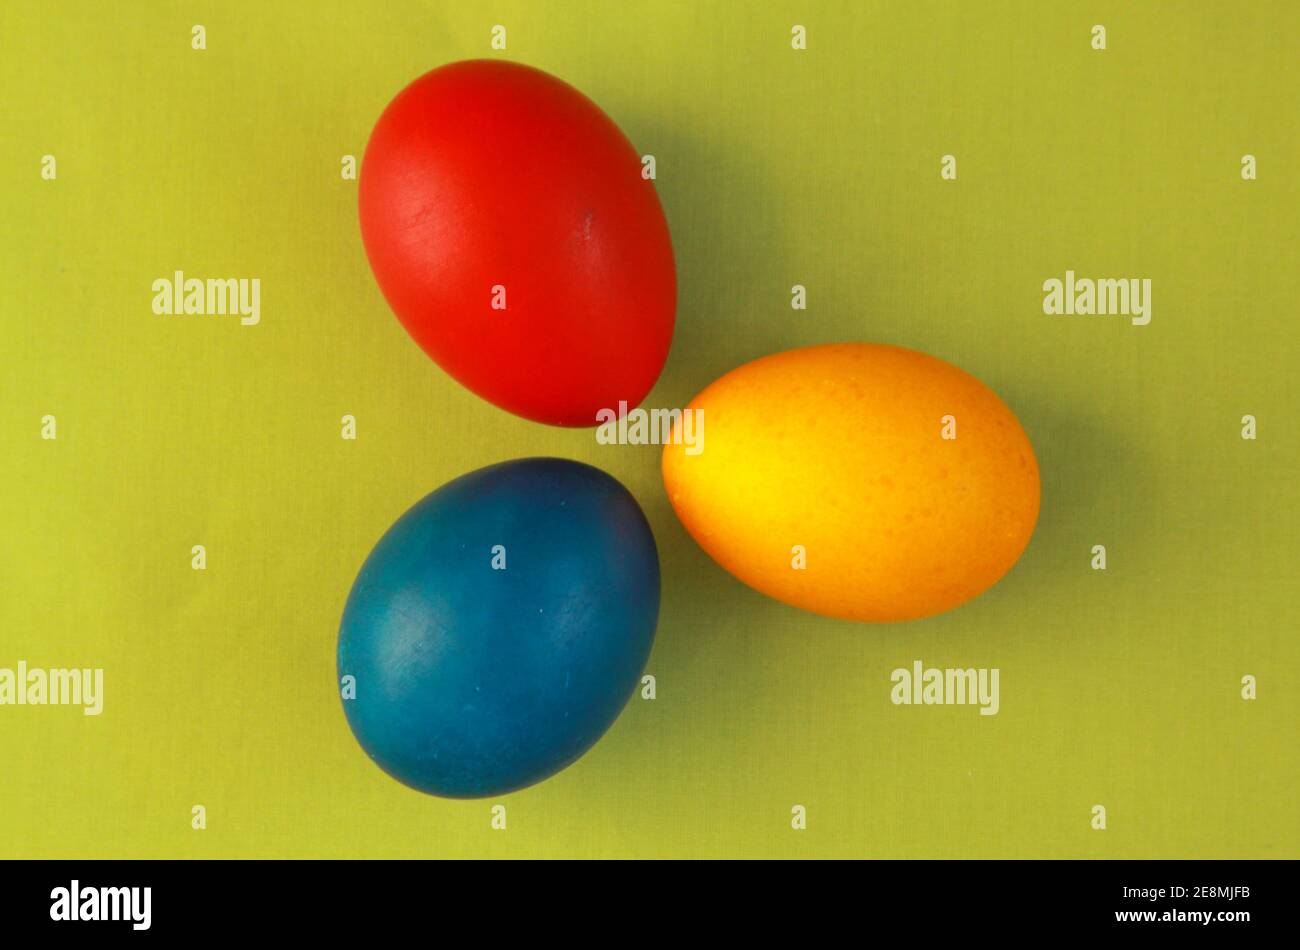 Œufs de Pâques ronds de couleur rouge, jaune et bleu sur fond vert vif concept 2020. Peindre des oeufs est une tradition chrétienne pendant les vacances de Pâques al Banque D'Images